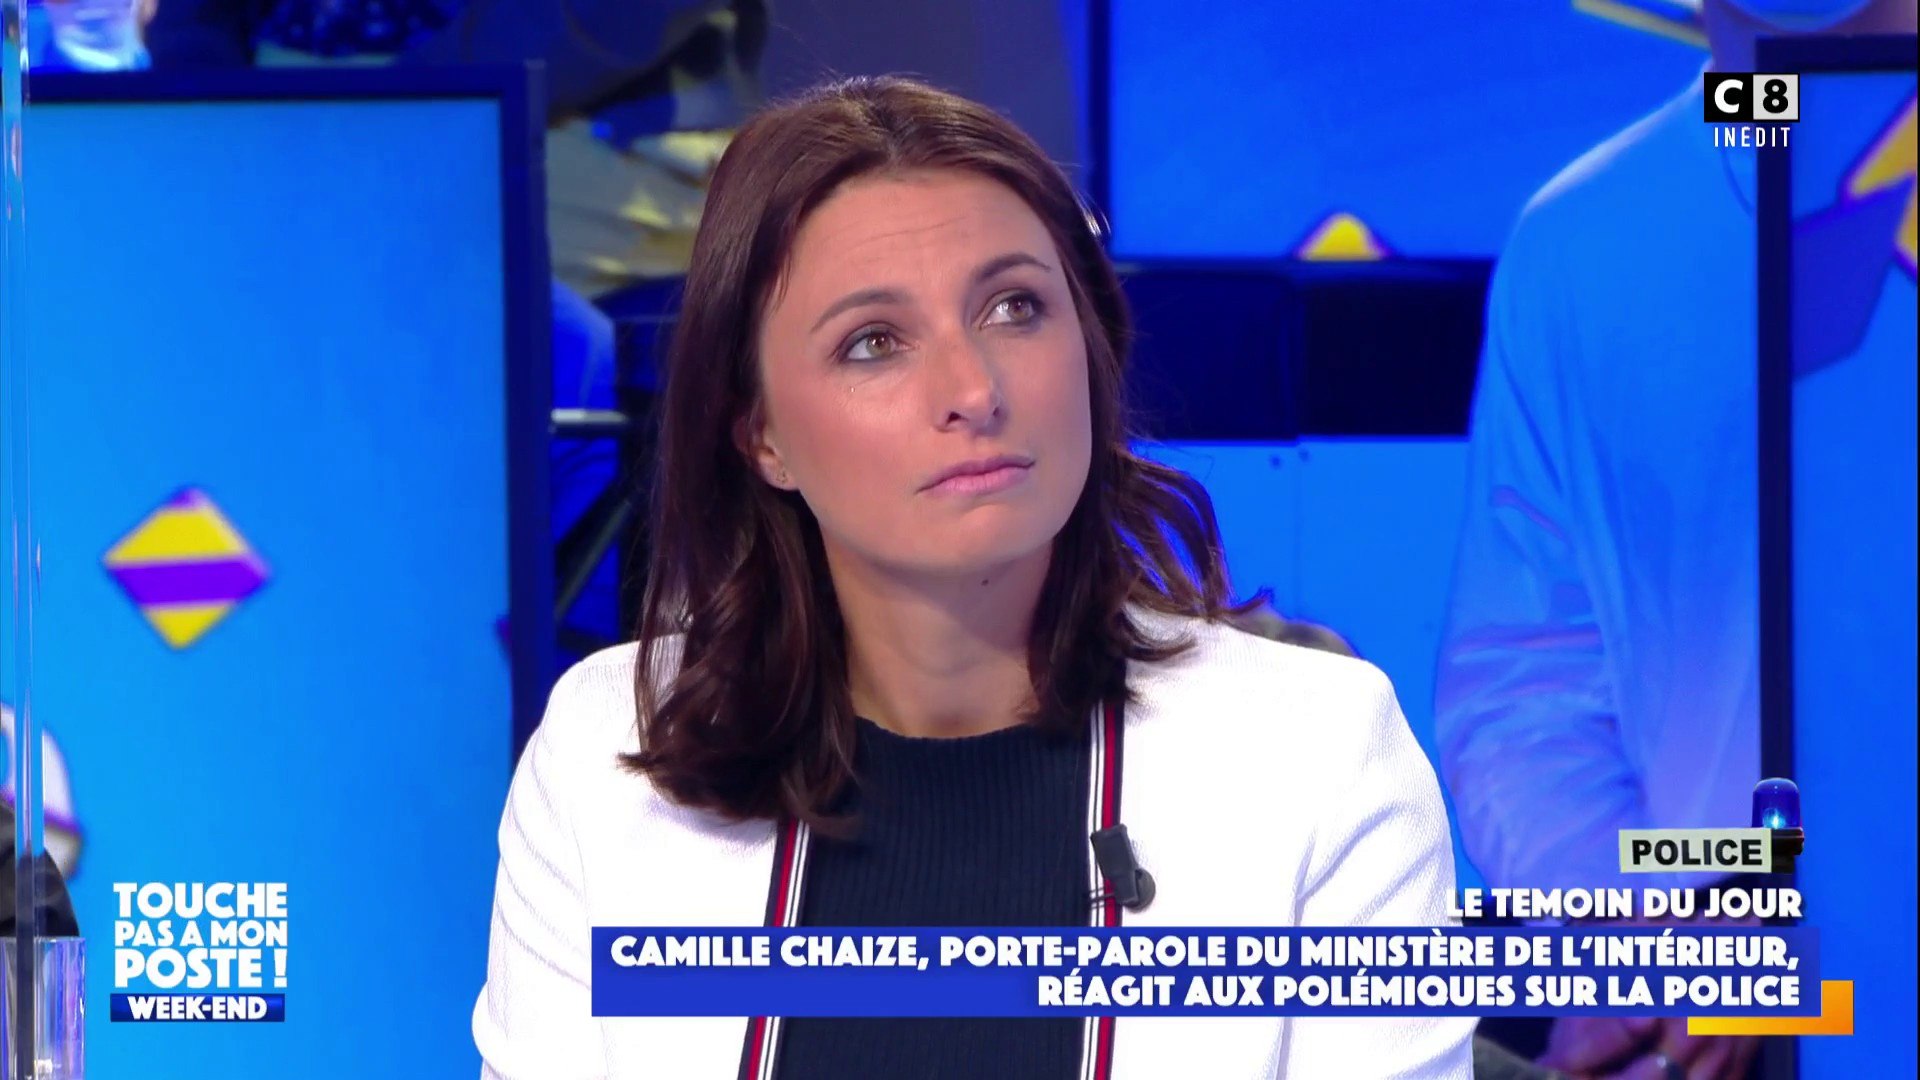 Camille Chaise, porte-parole du Ministère de l'intérieur réagit aux  polémiques sur la police - Vidéo Dailymotion